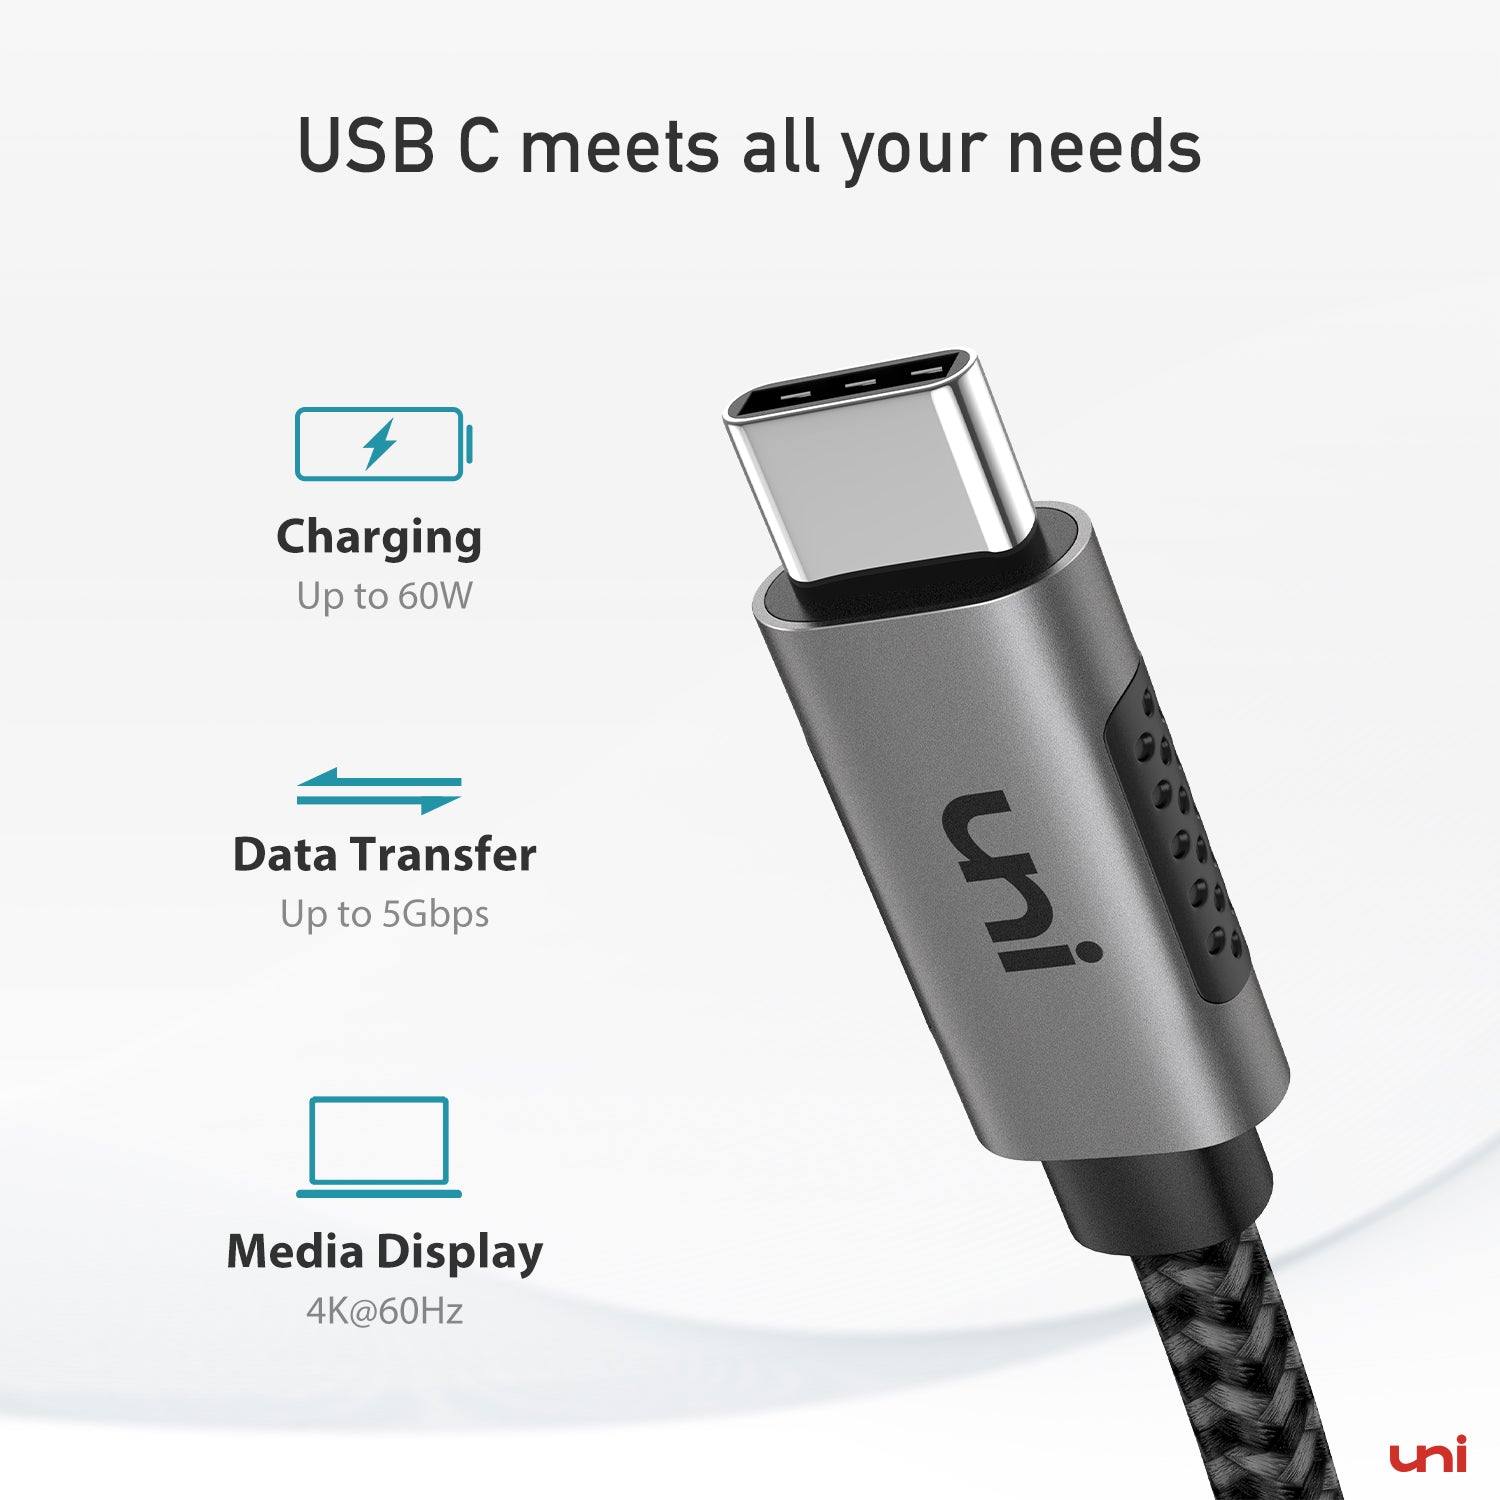 Cable cargador USB C, USB tipo C a cable de video USB C